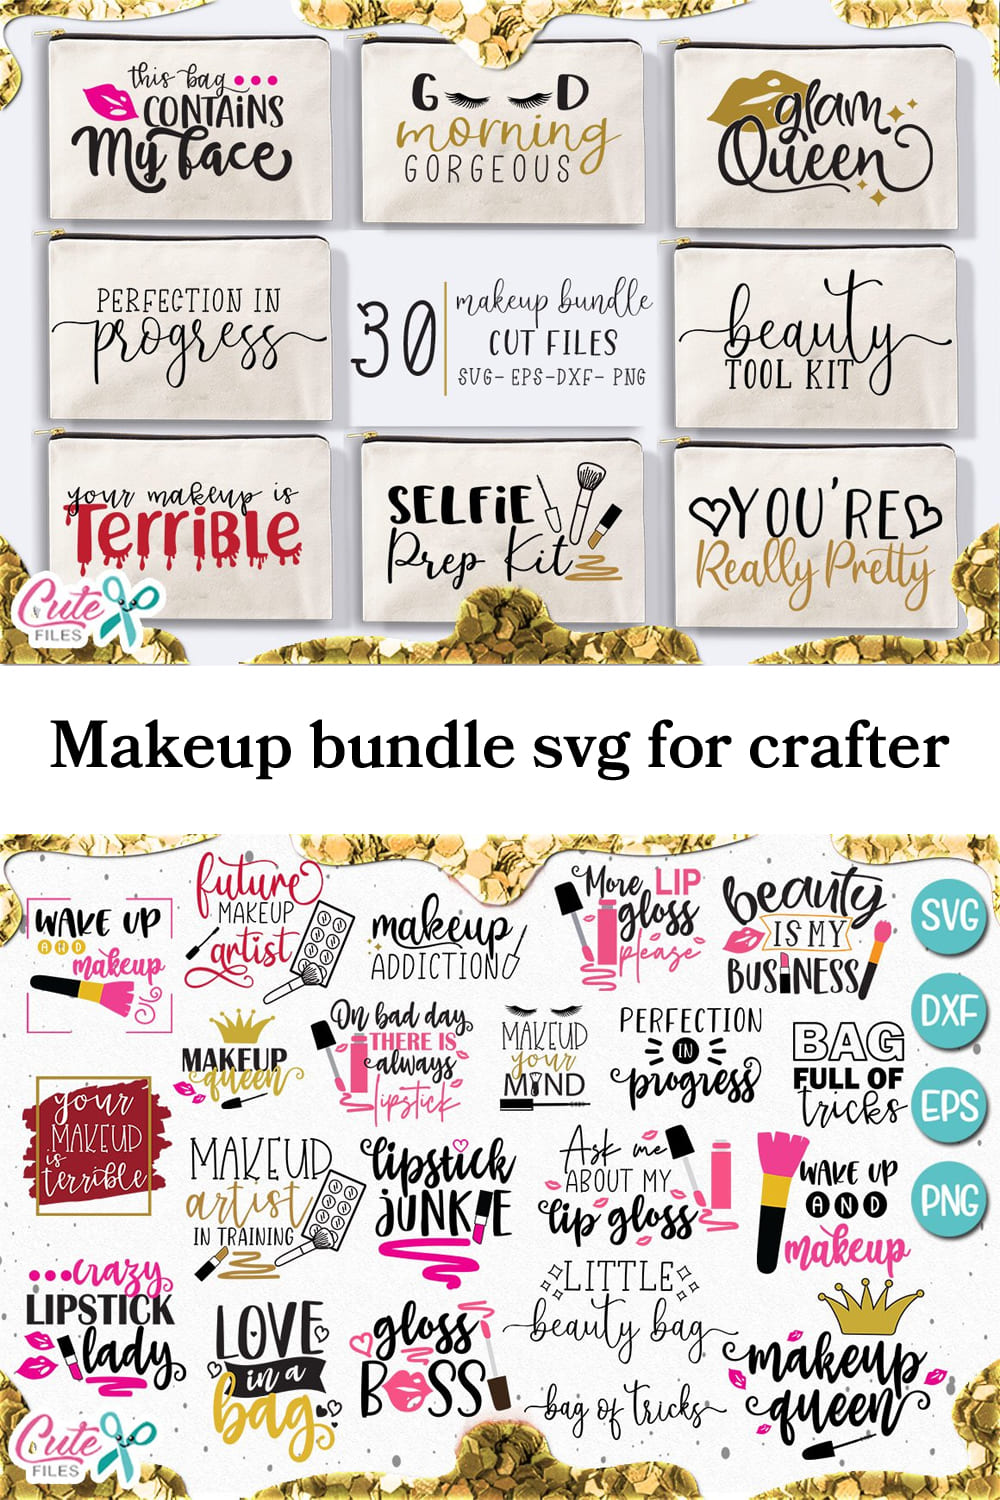 Makeup Bundle SVG for Crafter pinterest image.